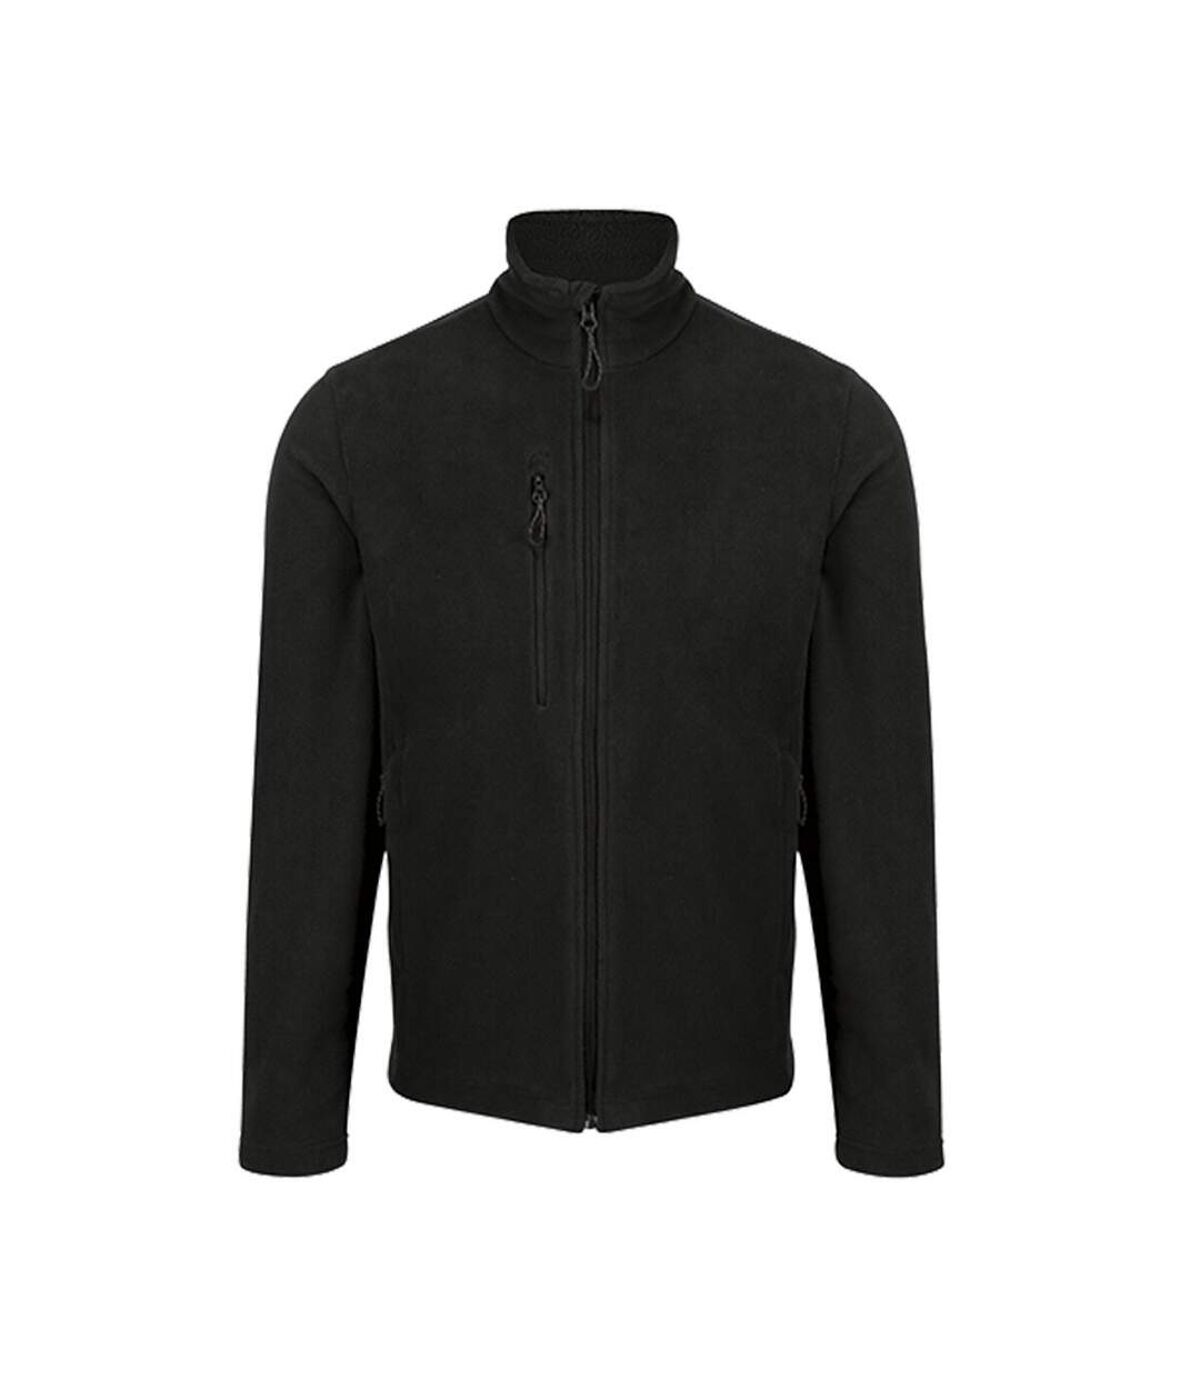 Regatta Mens Honestly Made Recycled Fleece Jacket (Black) - UTPC4048